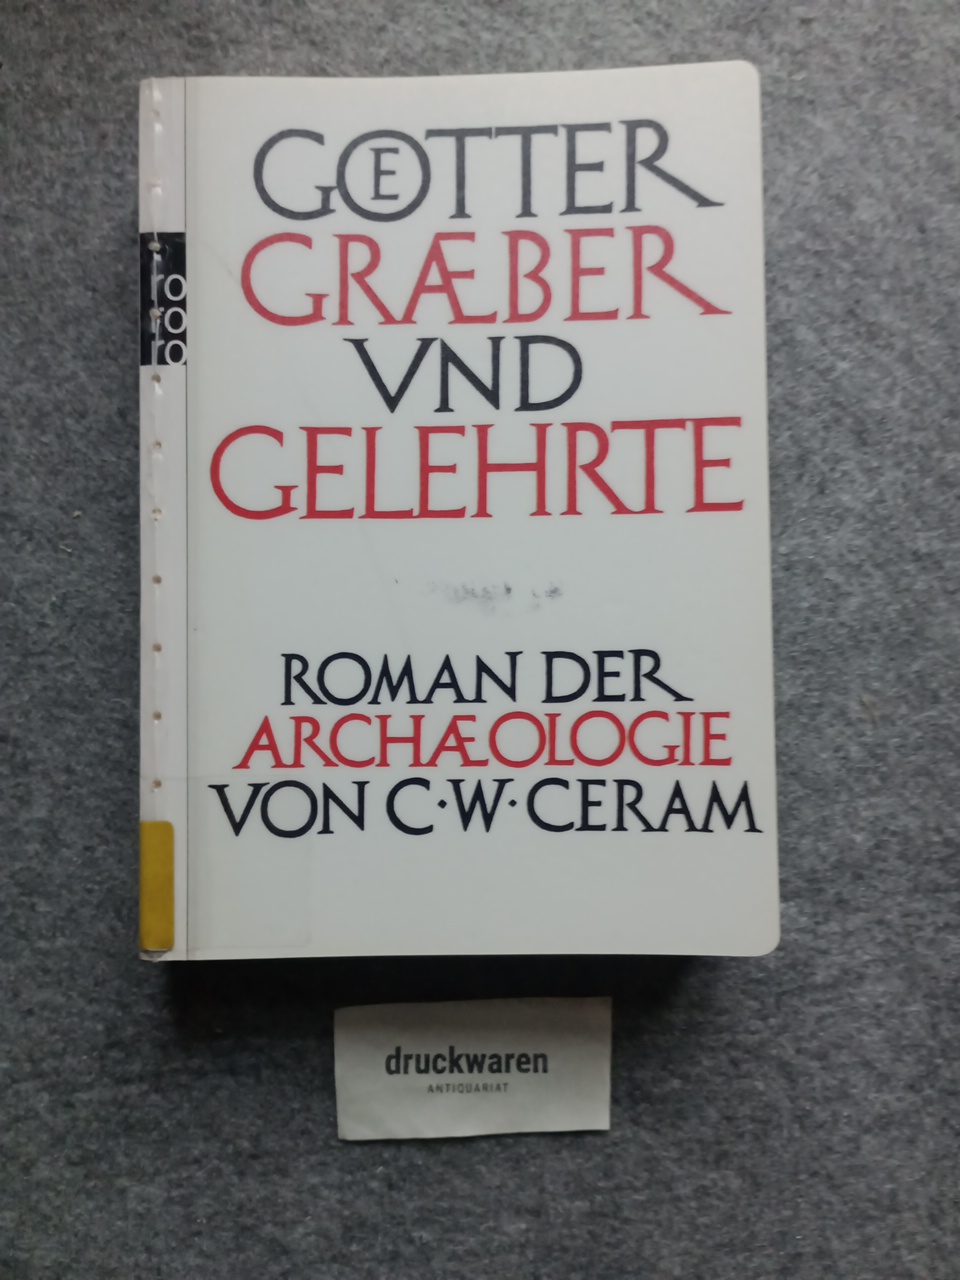 Götter, Gräber und Gelehrte : Roman der Archäologie. Rororo 62453 : Sachbuch. - Ceram, C. W.